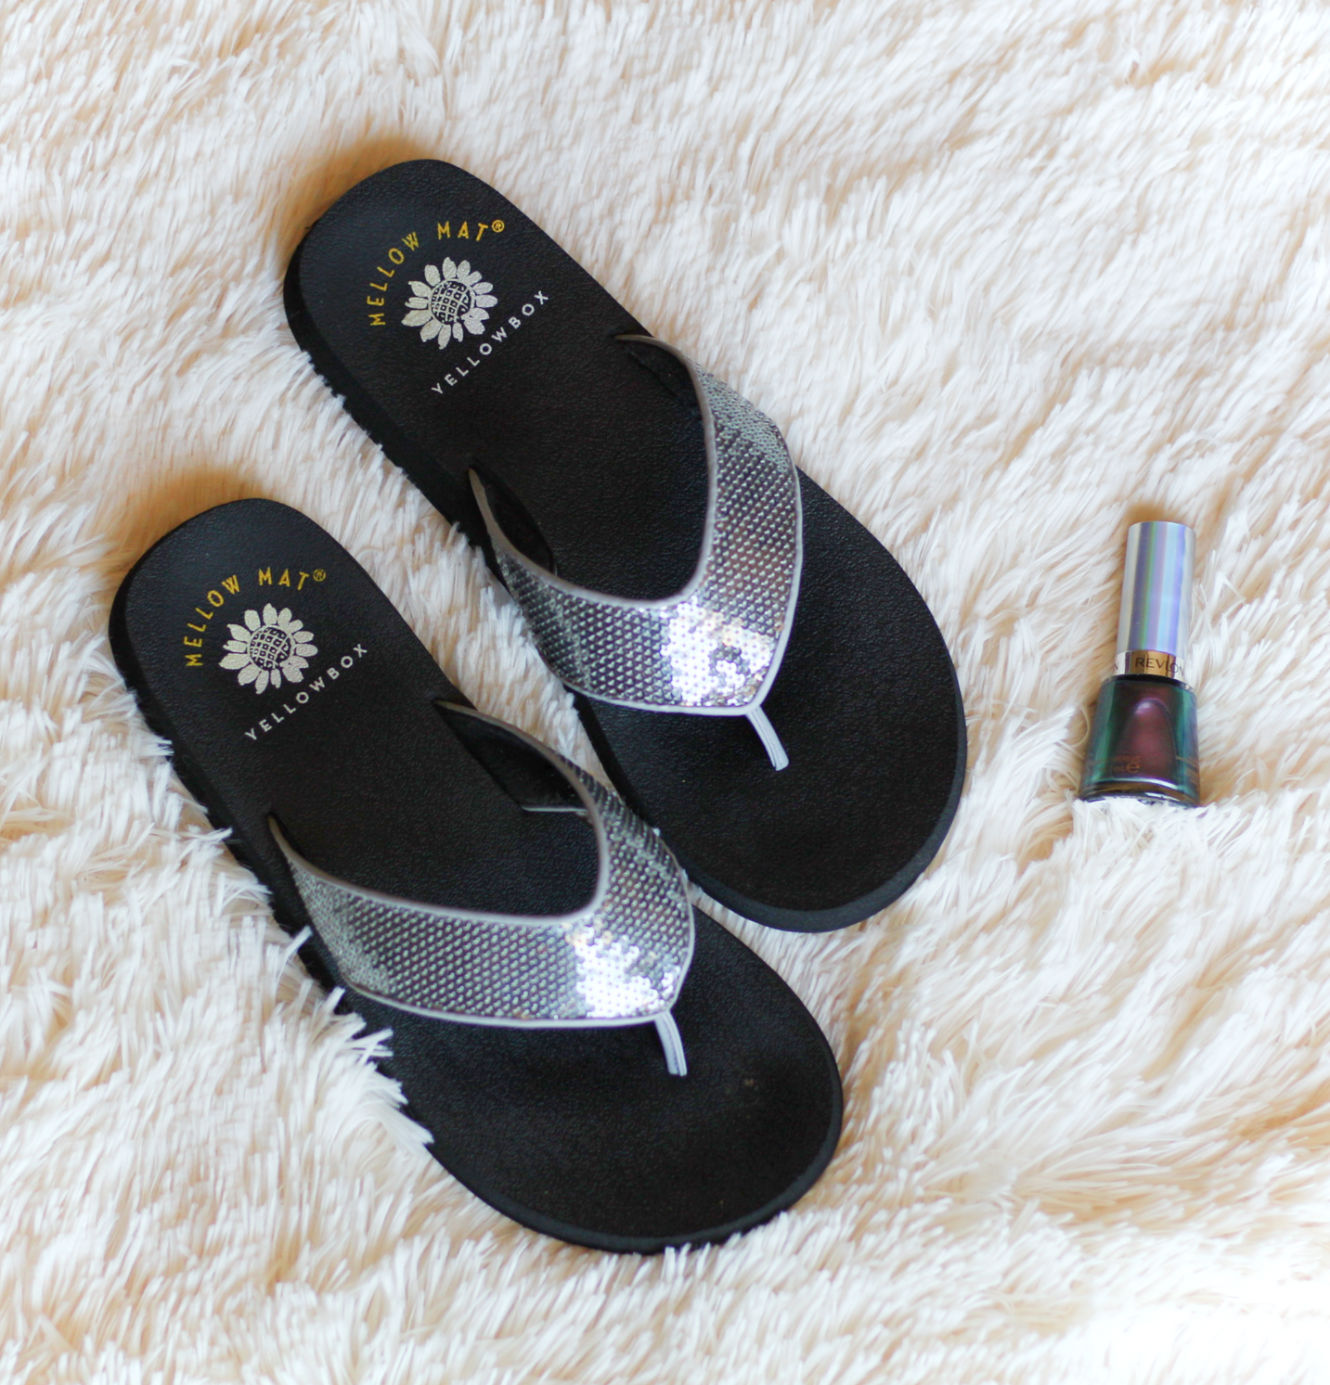 Summer Sandals Plus a Fun Nail Polish